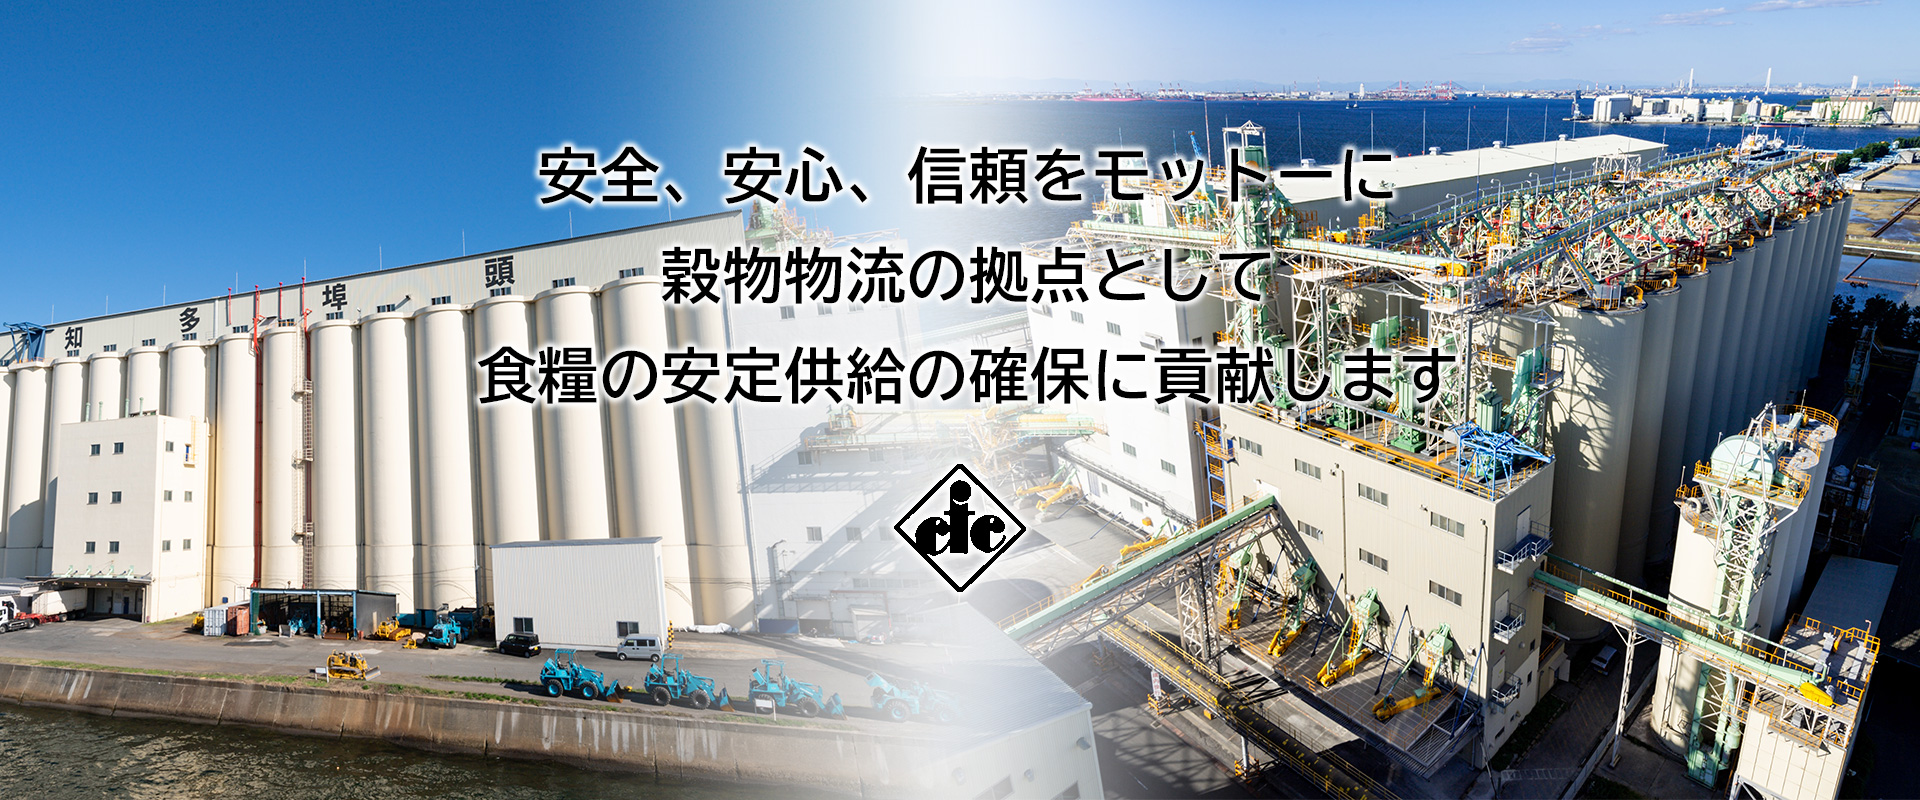 安全・安心・信頼を大切に 日本の食料供給を支えます